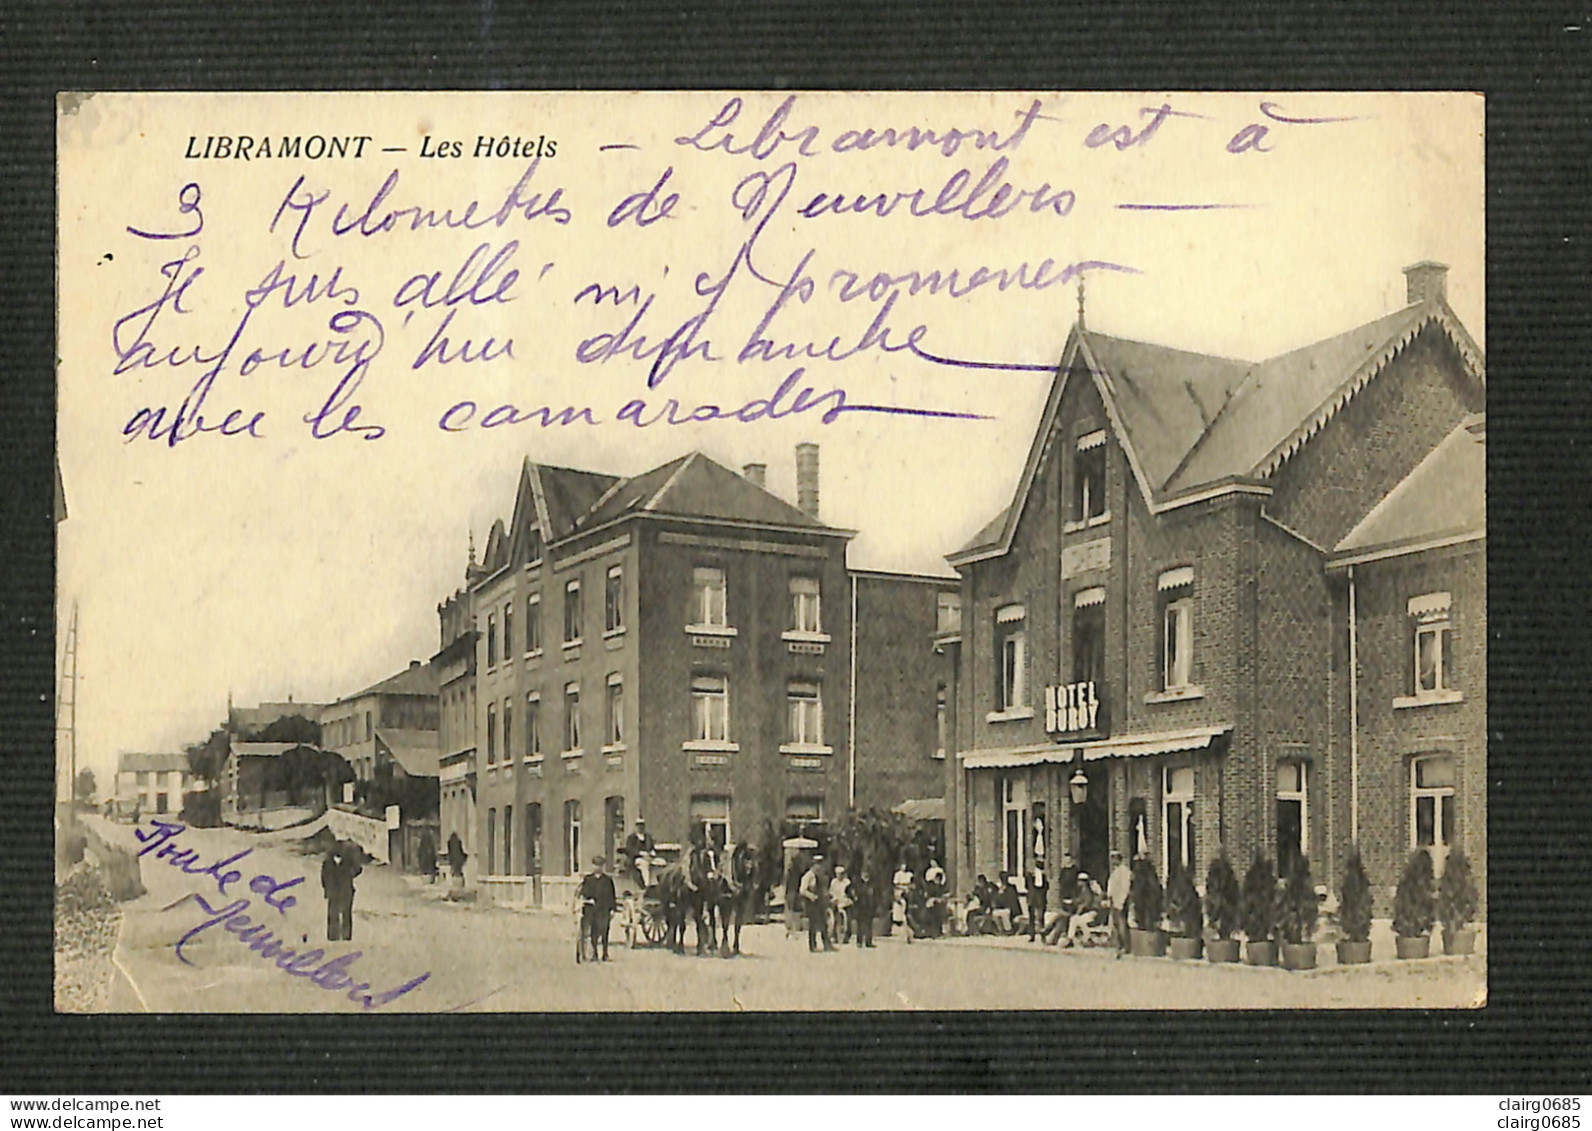 LUXEMBOURG - LIBRAMONT - Les Hôtels - Libramont-Chevigny